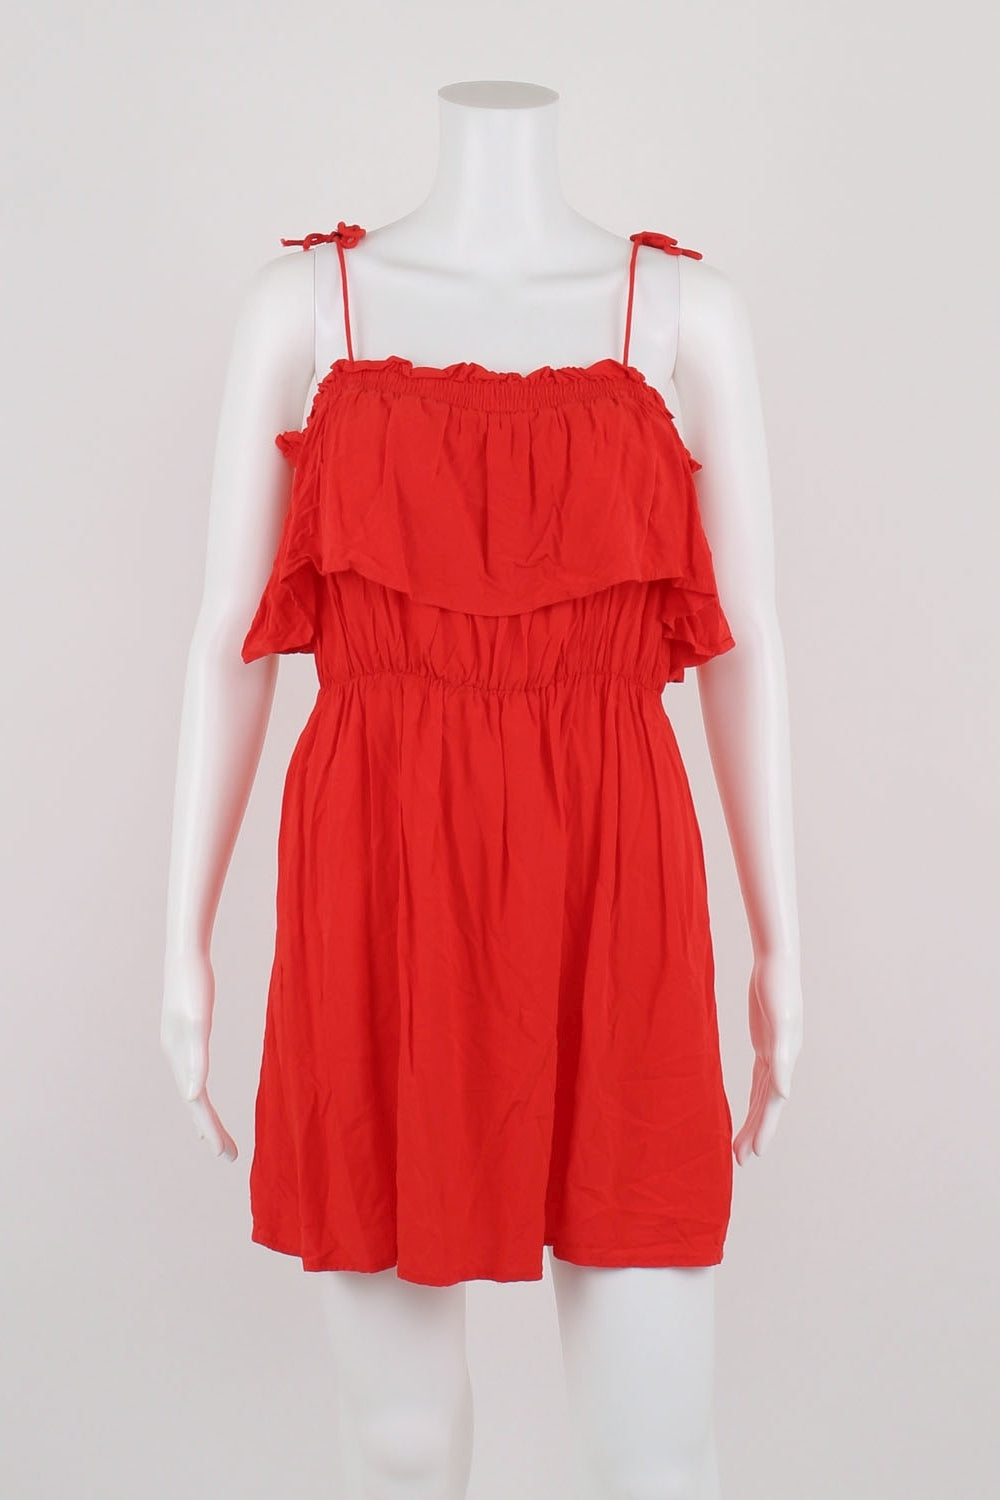 Bardot Red Off the Shoulder Dress 10